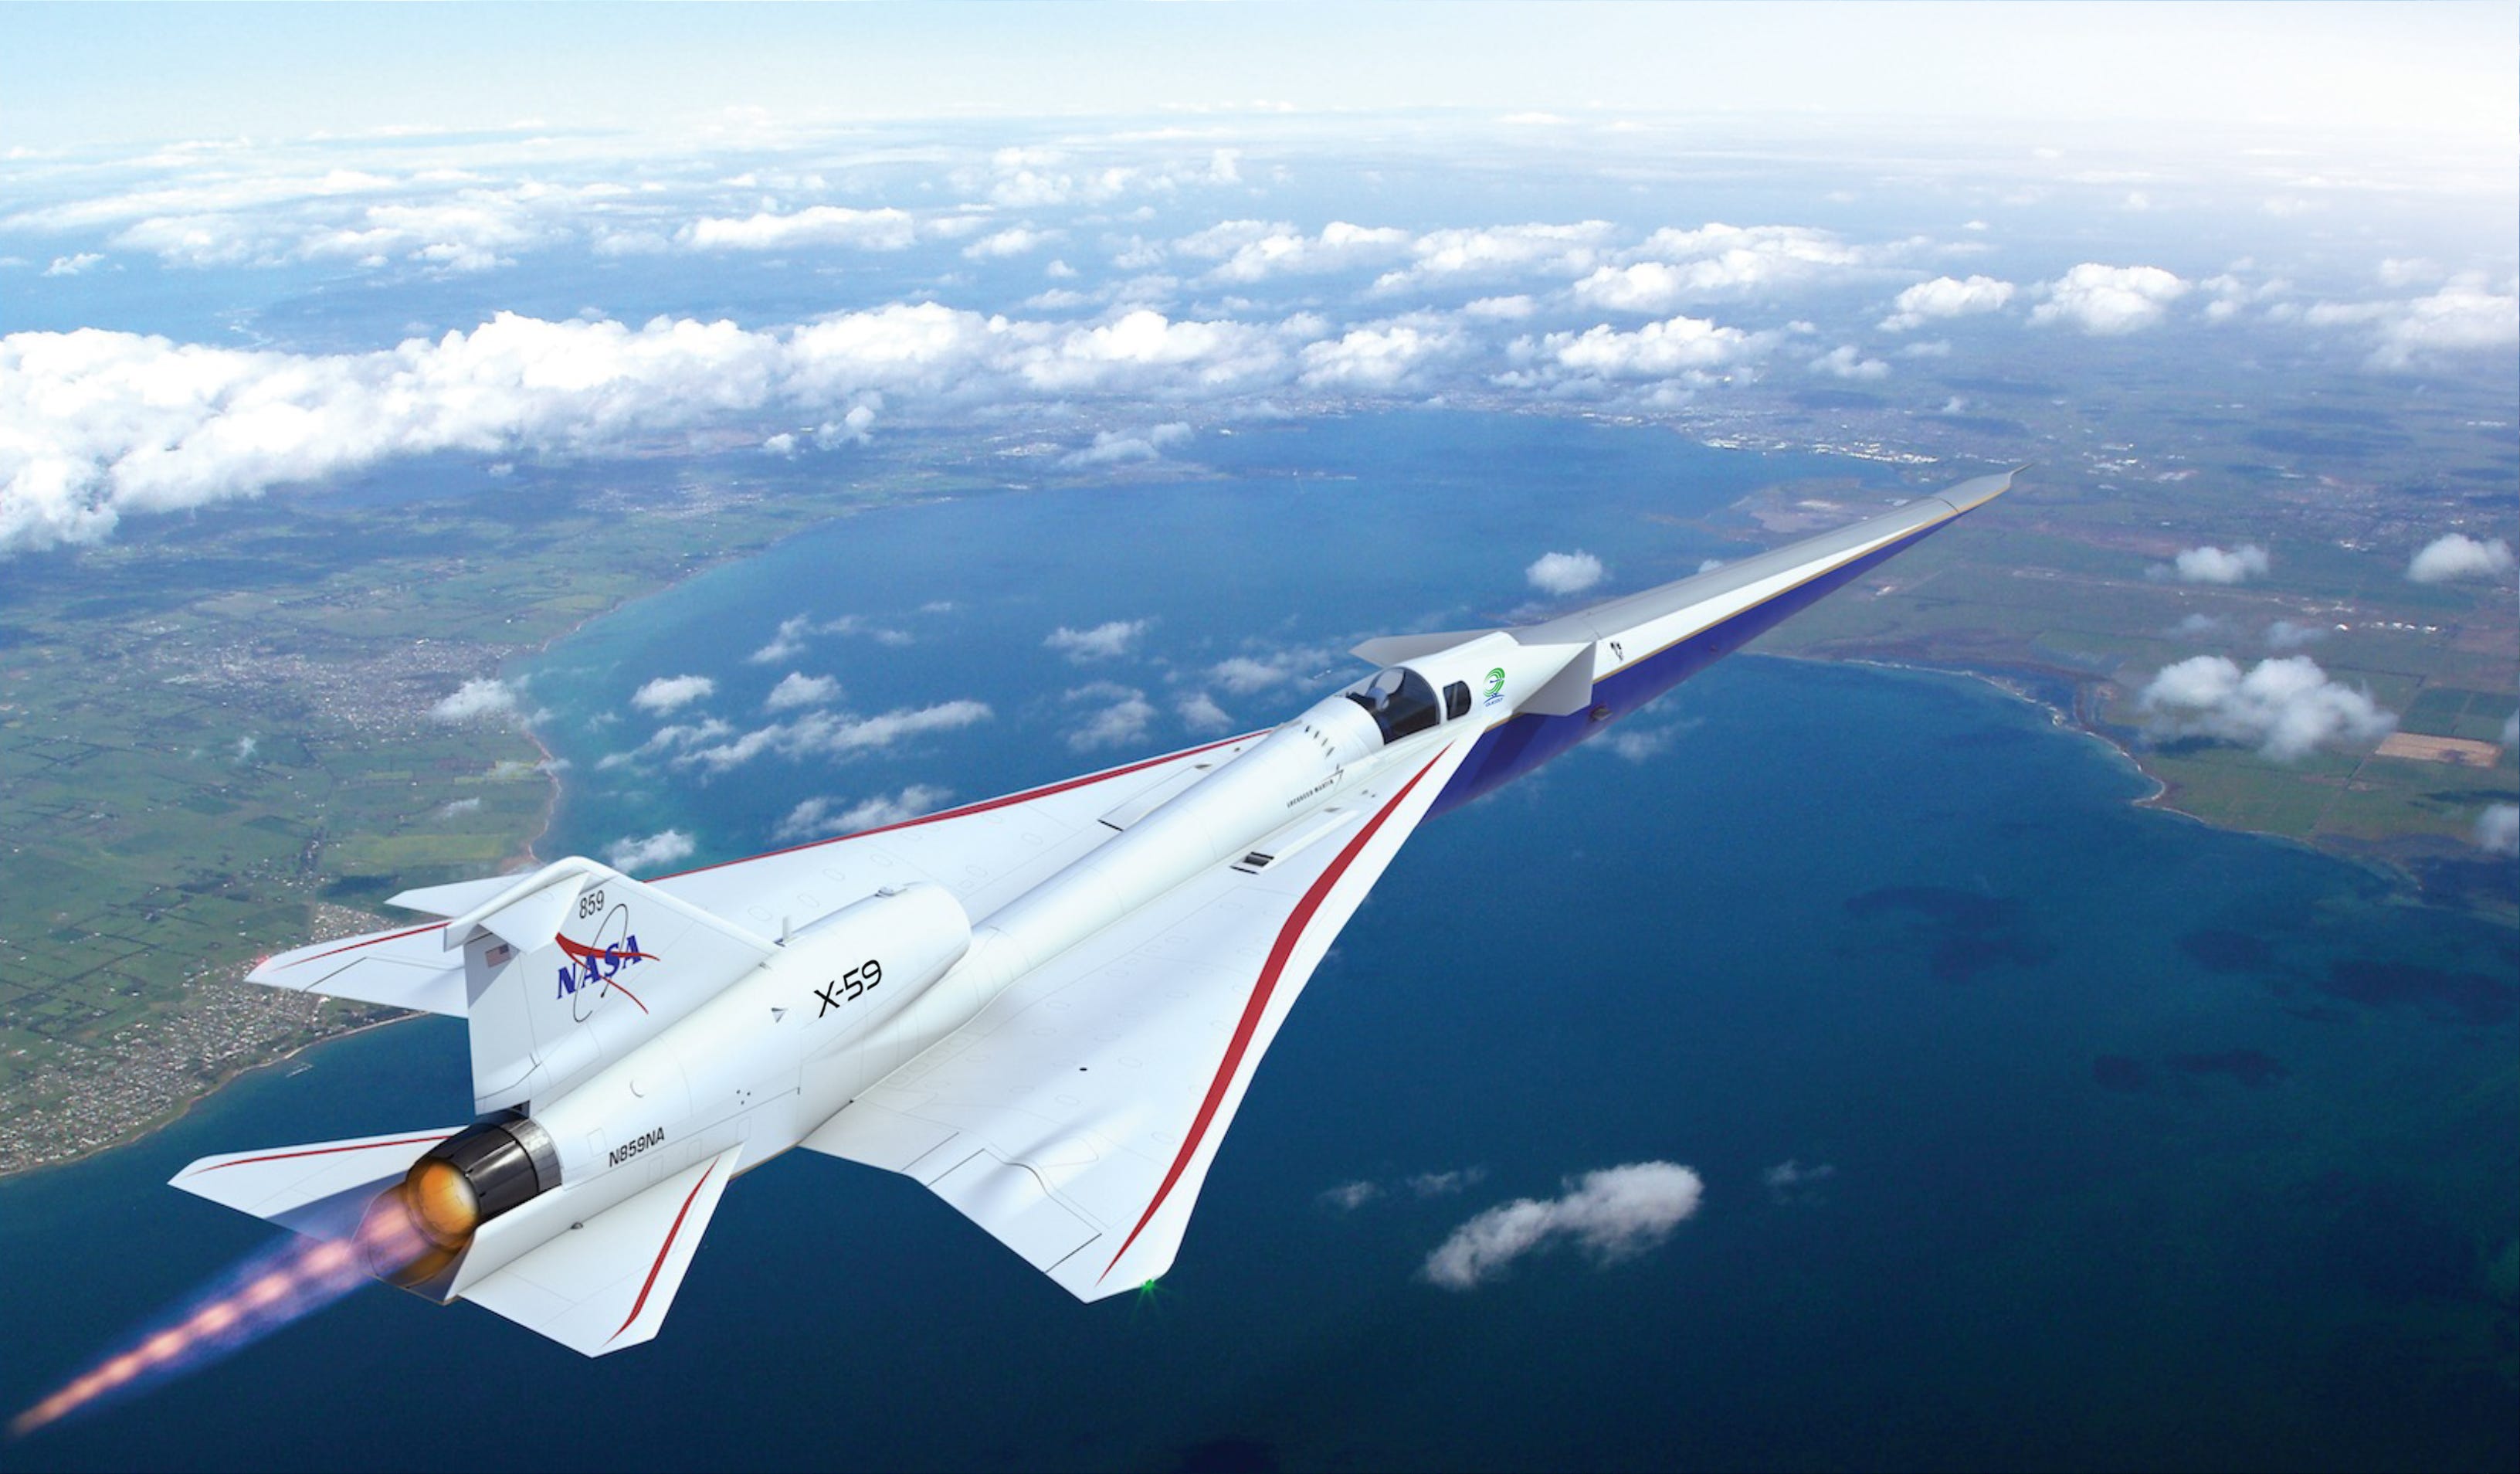 Eine künstlerische Darstellung der X-59 der NASA im Flug zeigt ein schlankes Flugzeug mit einer verlängerten Nase, das hoch über der Erde fliegt.